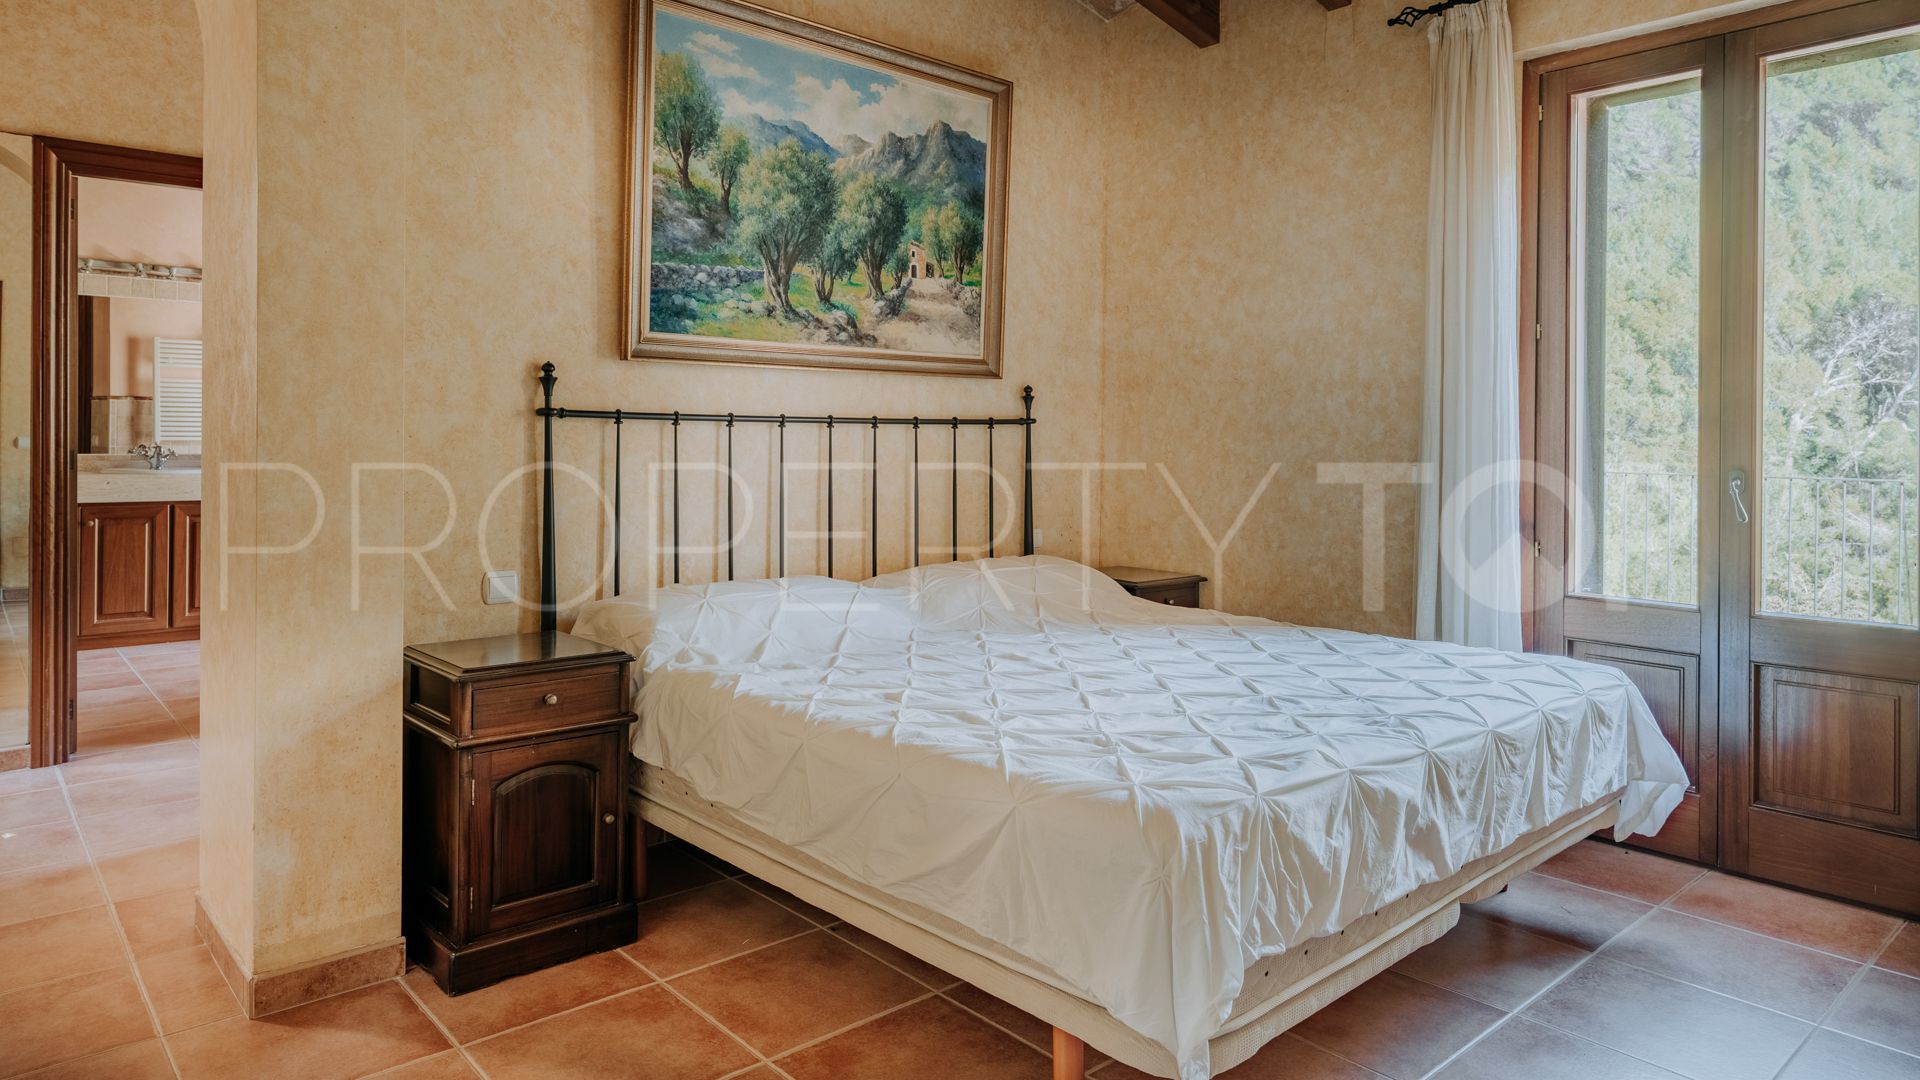 3 bedrooms villa for sale in Deyá / Deià